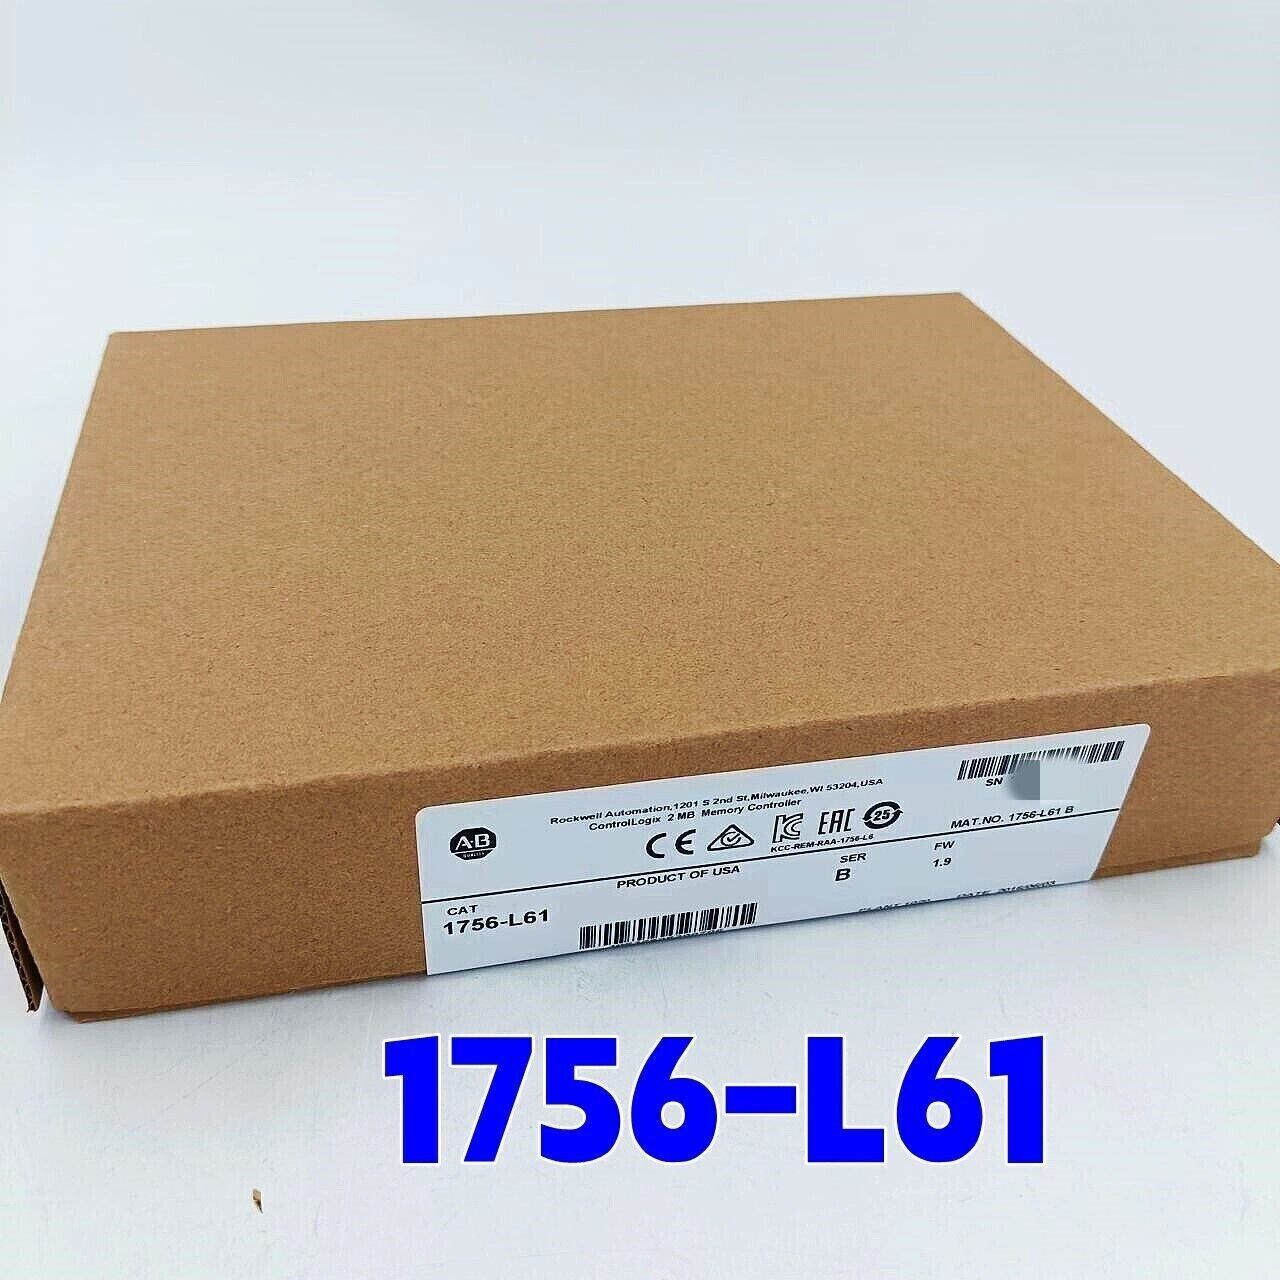 New Factory Sealed AB 1756-L61 SER B ControlLogix 2MB Memory Controller 1756L61